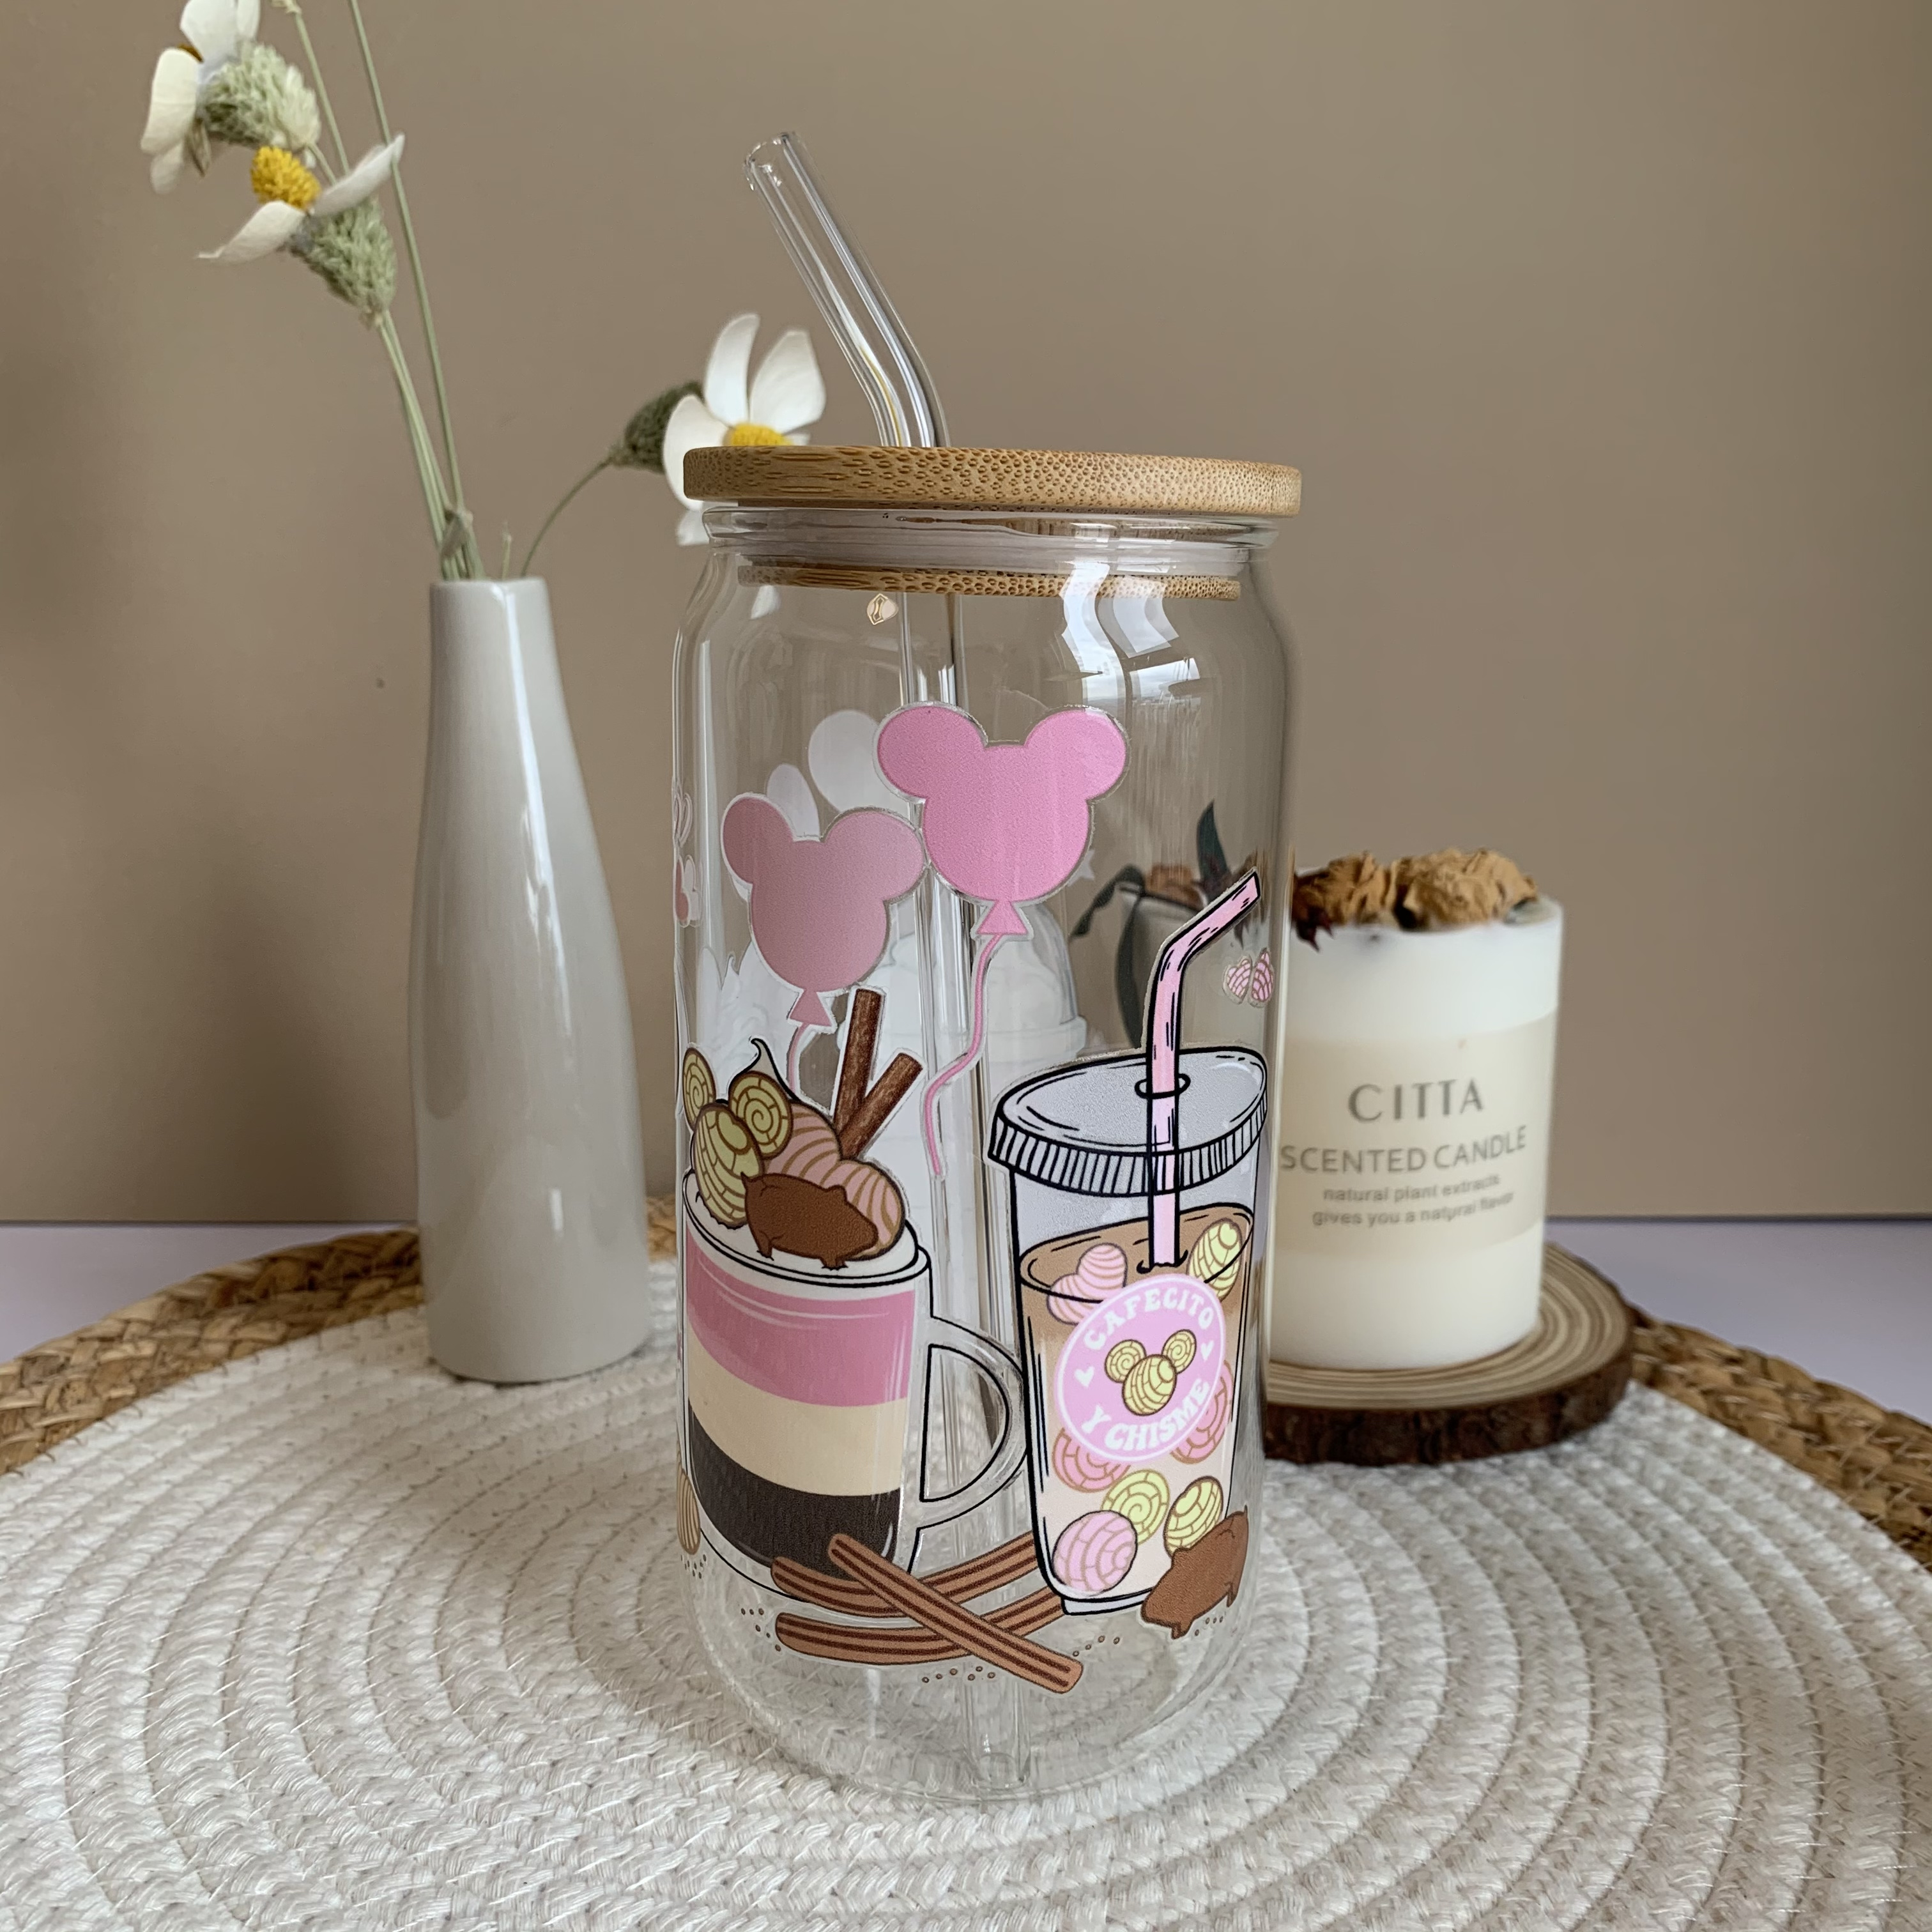 Vaso con pajita de cristal estriado tintado de rosa con tapa de bambú